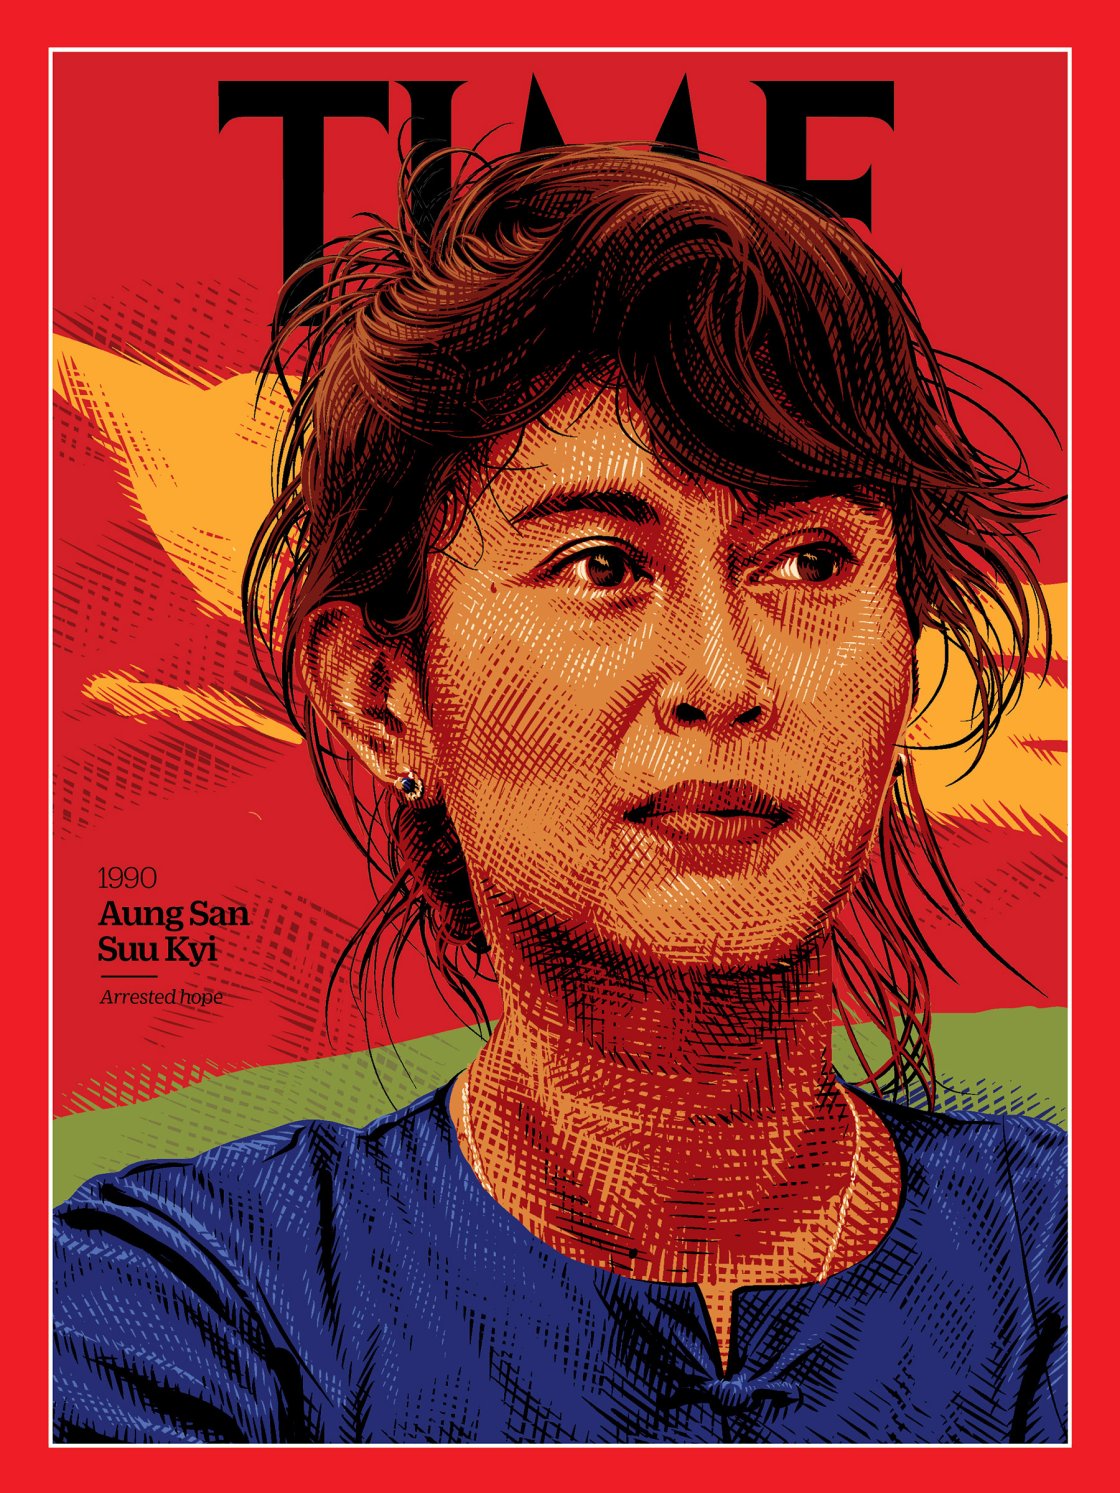 Aung San Suu Kyi: premio Nobel per la pace, politica birmana attiva sul fronte dei diritti umani Illustration by Tracie Ching for TIME; Sandro Tucci—The LIFE Images Collection/Getty)